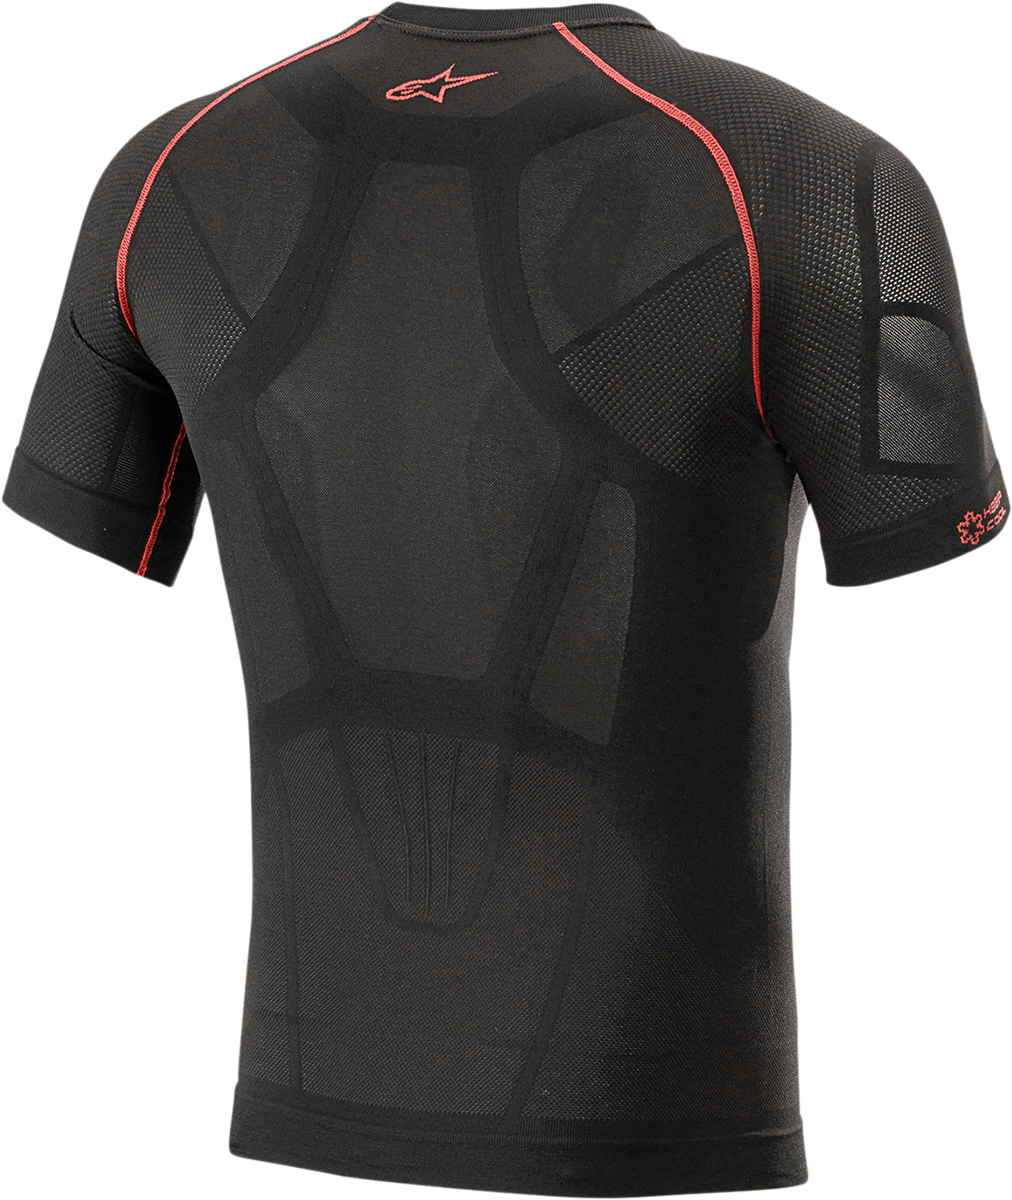 ALPINESTARS Ride Tech v2 Summer Short Sleeve Underwear Top - Black - XL/2XL 4752721-13-XL/2